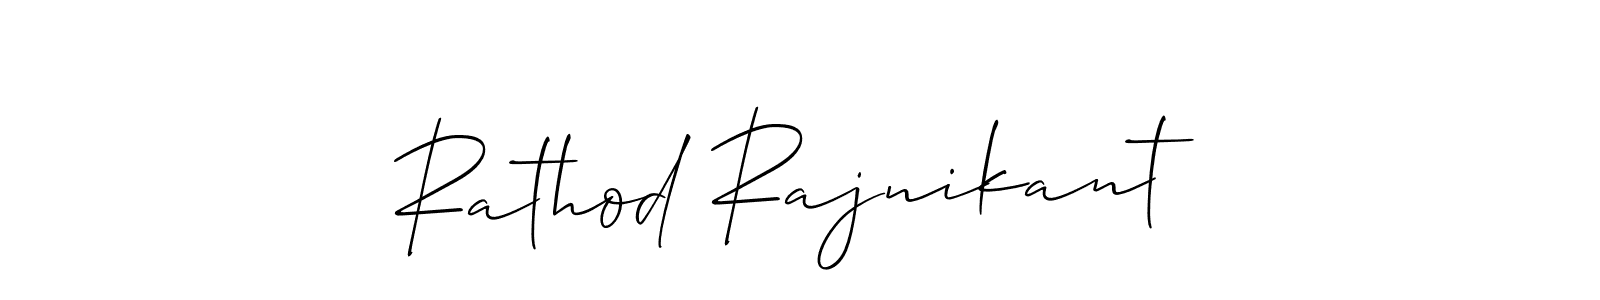 Check out images of Autograph of Rathod Rajnikant name. Actor Rathod Rajnikant Signature Style. Allison_Script is a professional sign style online. Rathod Rajnikant signature style 2 images and pictures png